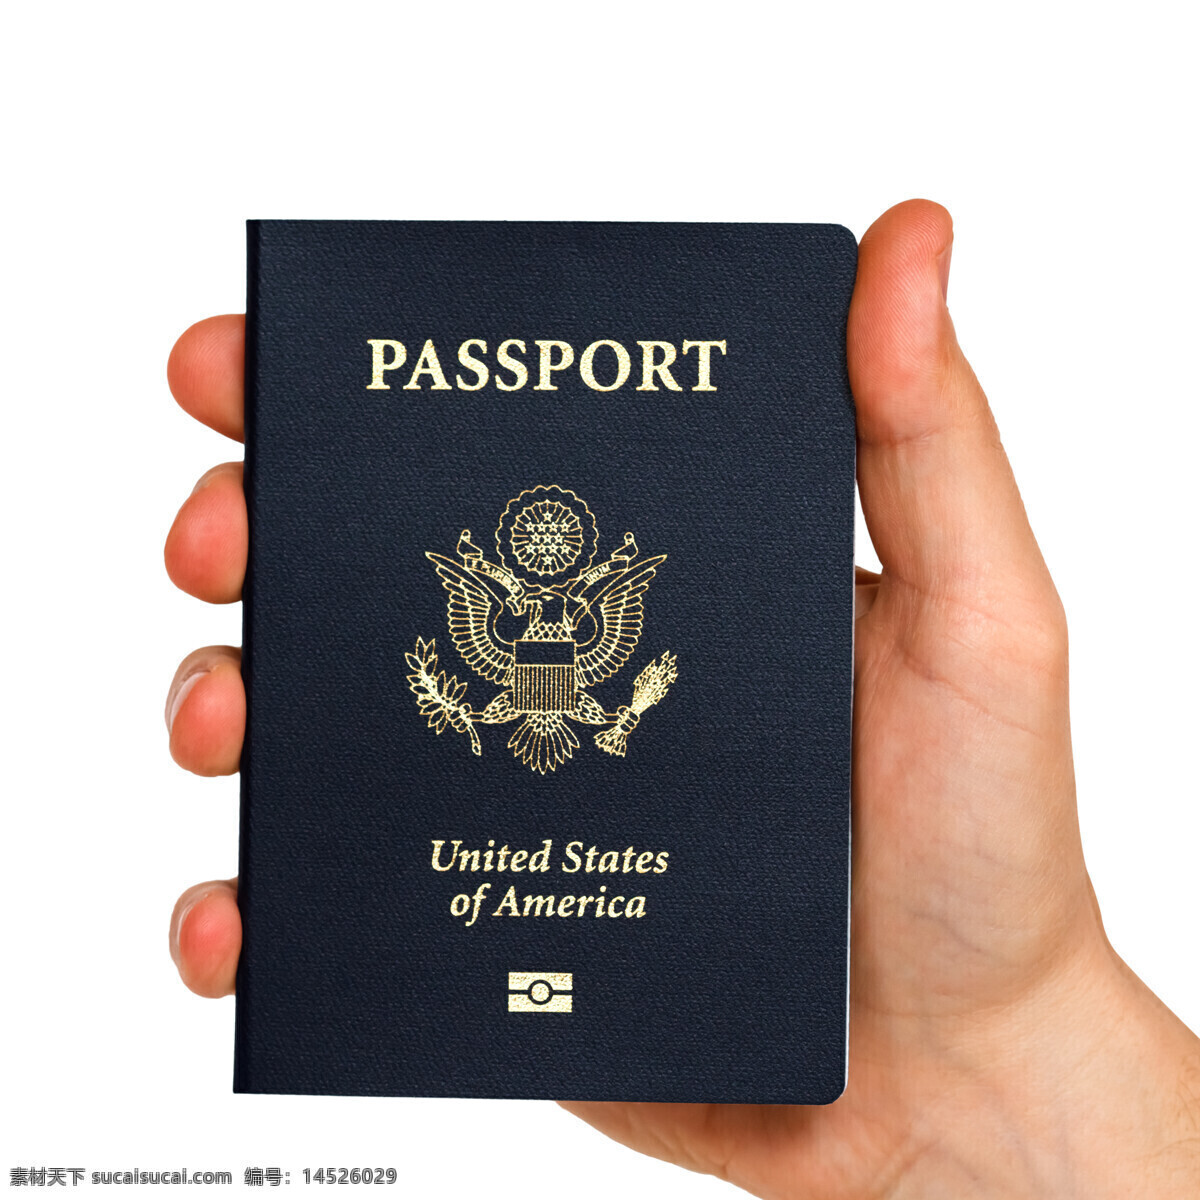 手中的护照 美国 护照 美国人 证件 通行证 国家 国徽 手 出国 其他类别 生活百科 白色